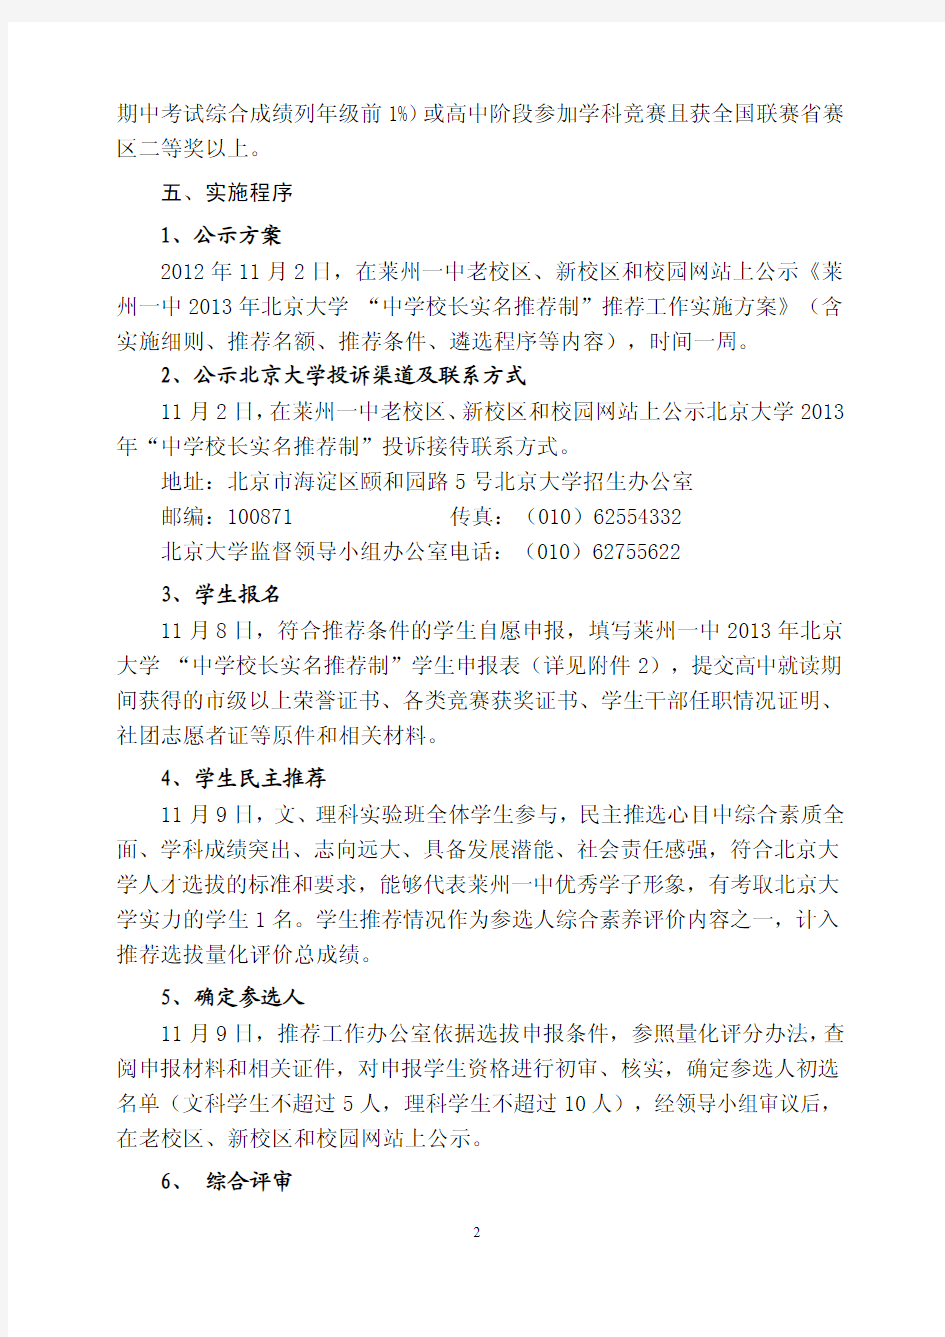 莱州一中 2013 年北京大学 “ 中学校长实名推荐制 ”